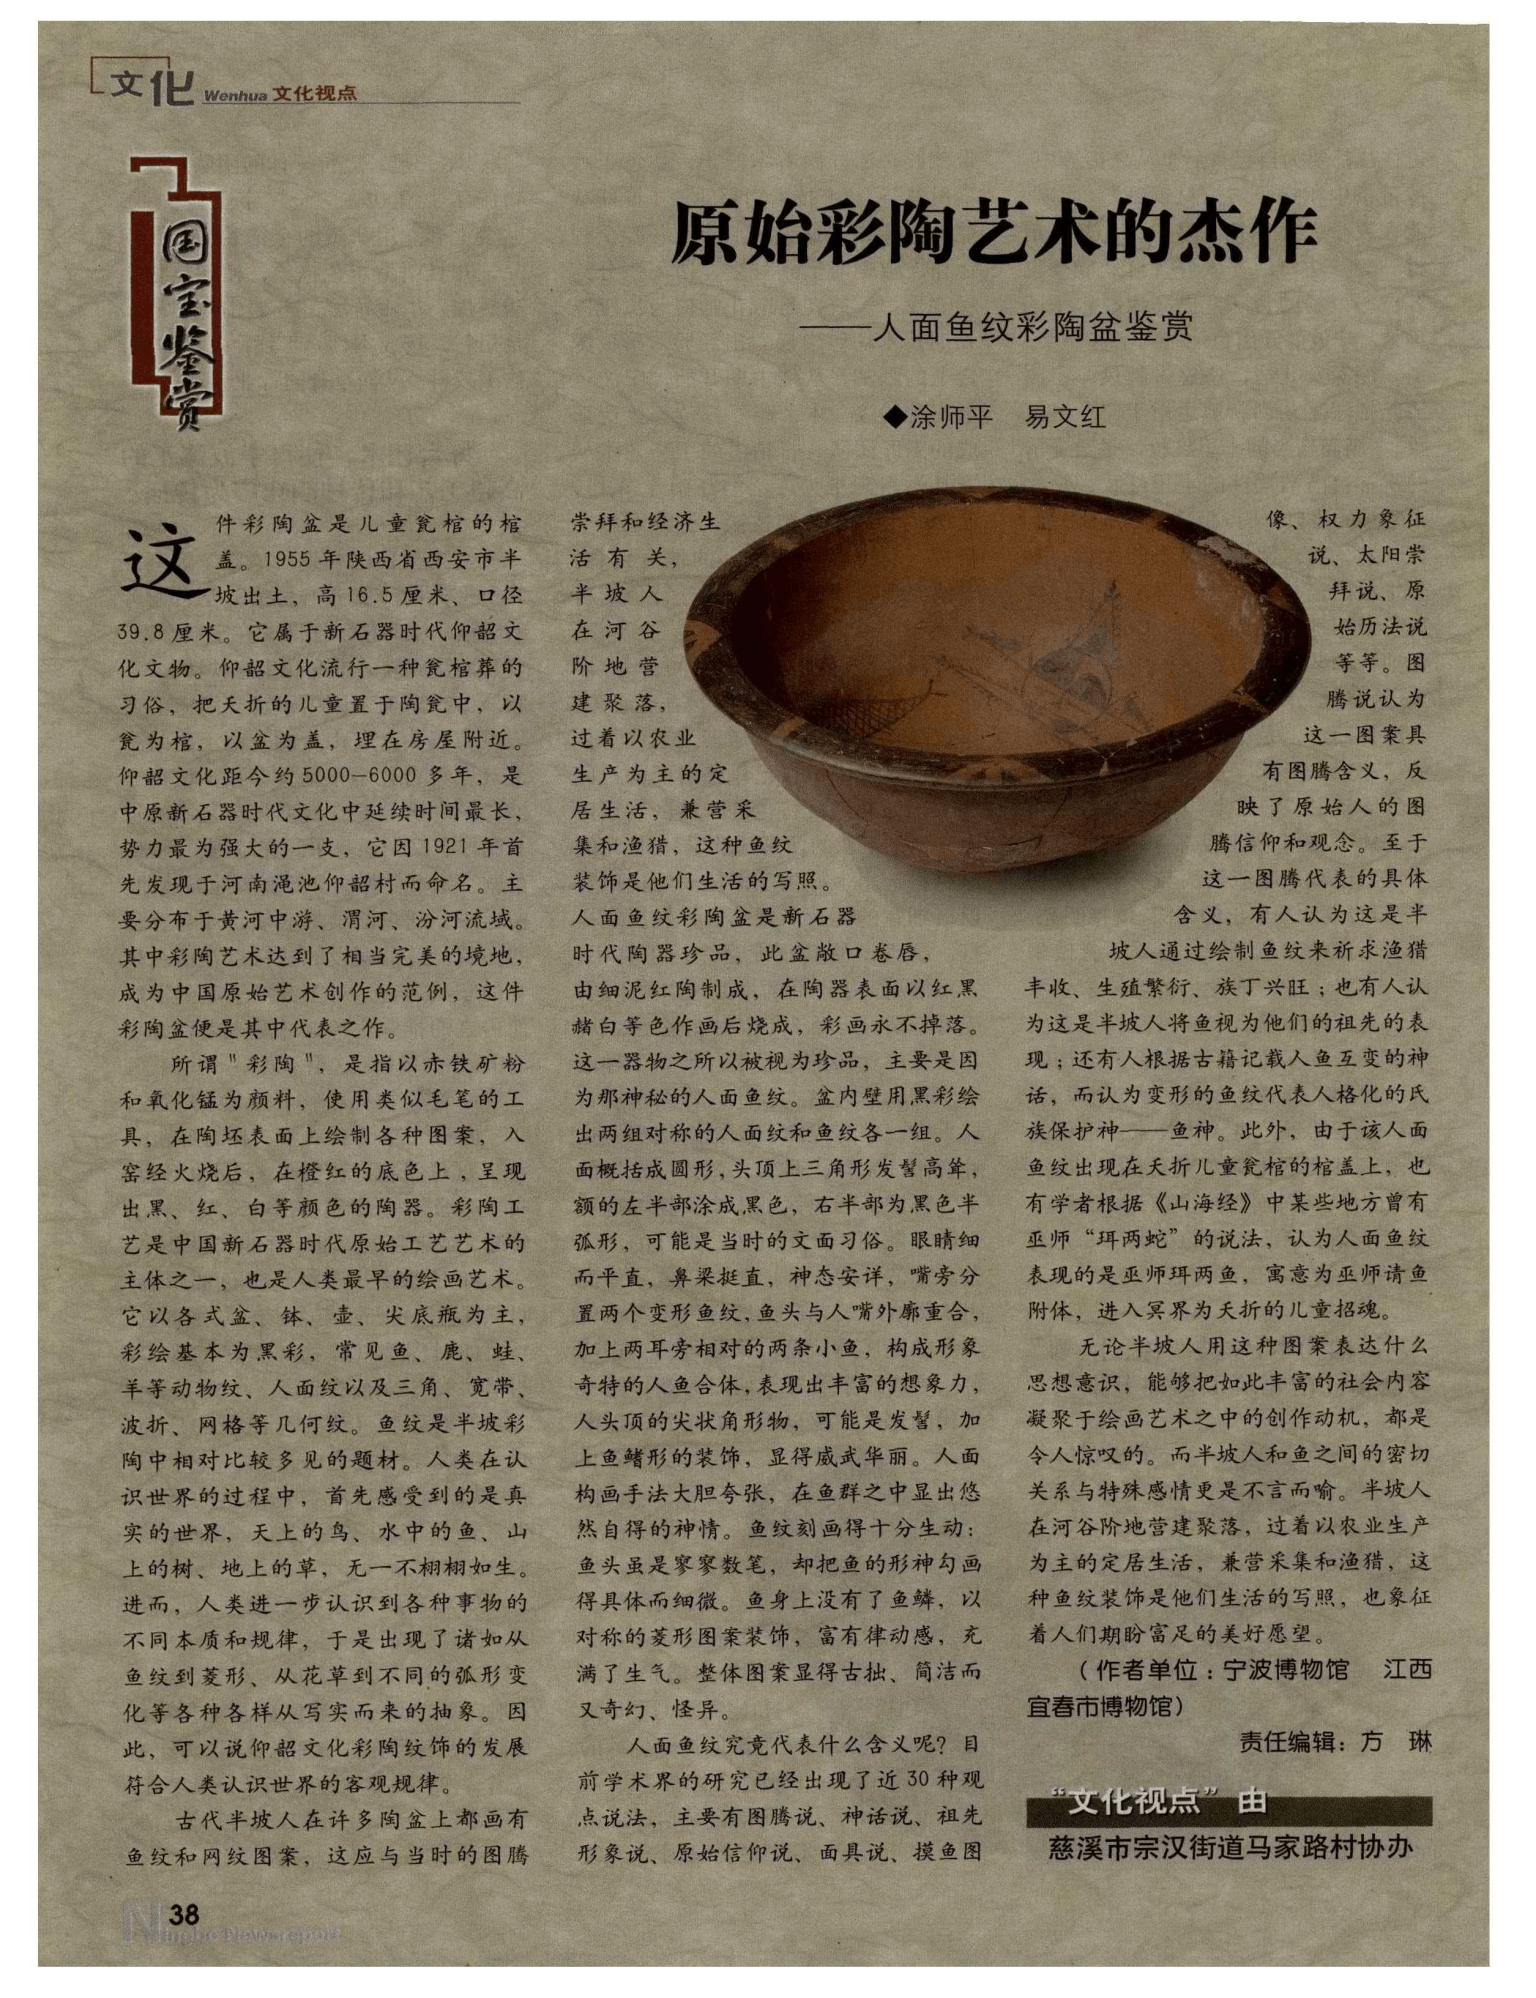 原始彩陶艺术的杰作——人面鱼纹彩陶盆鉴赏